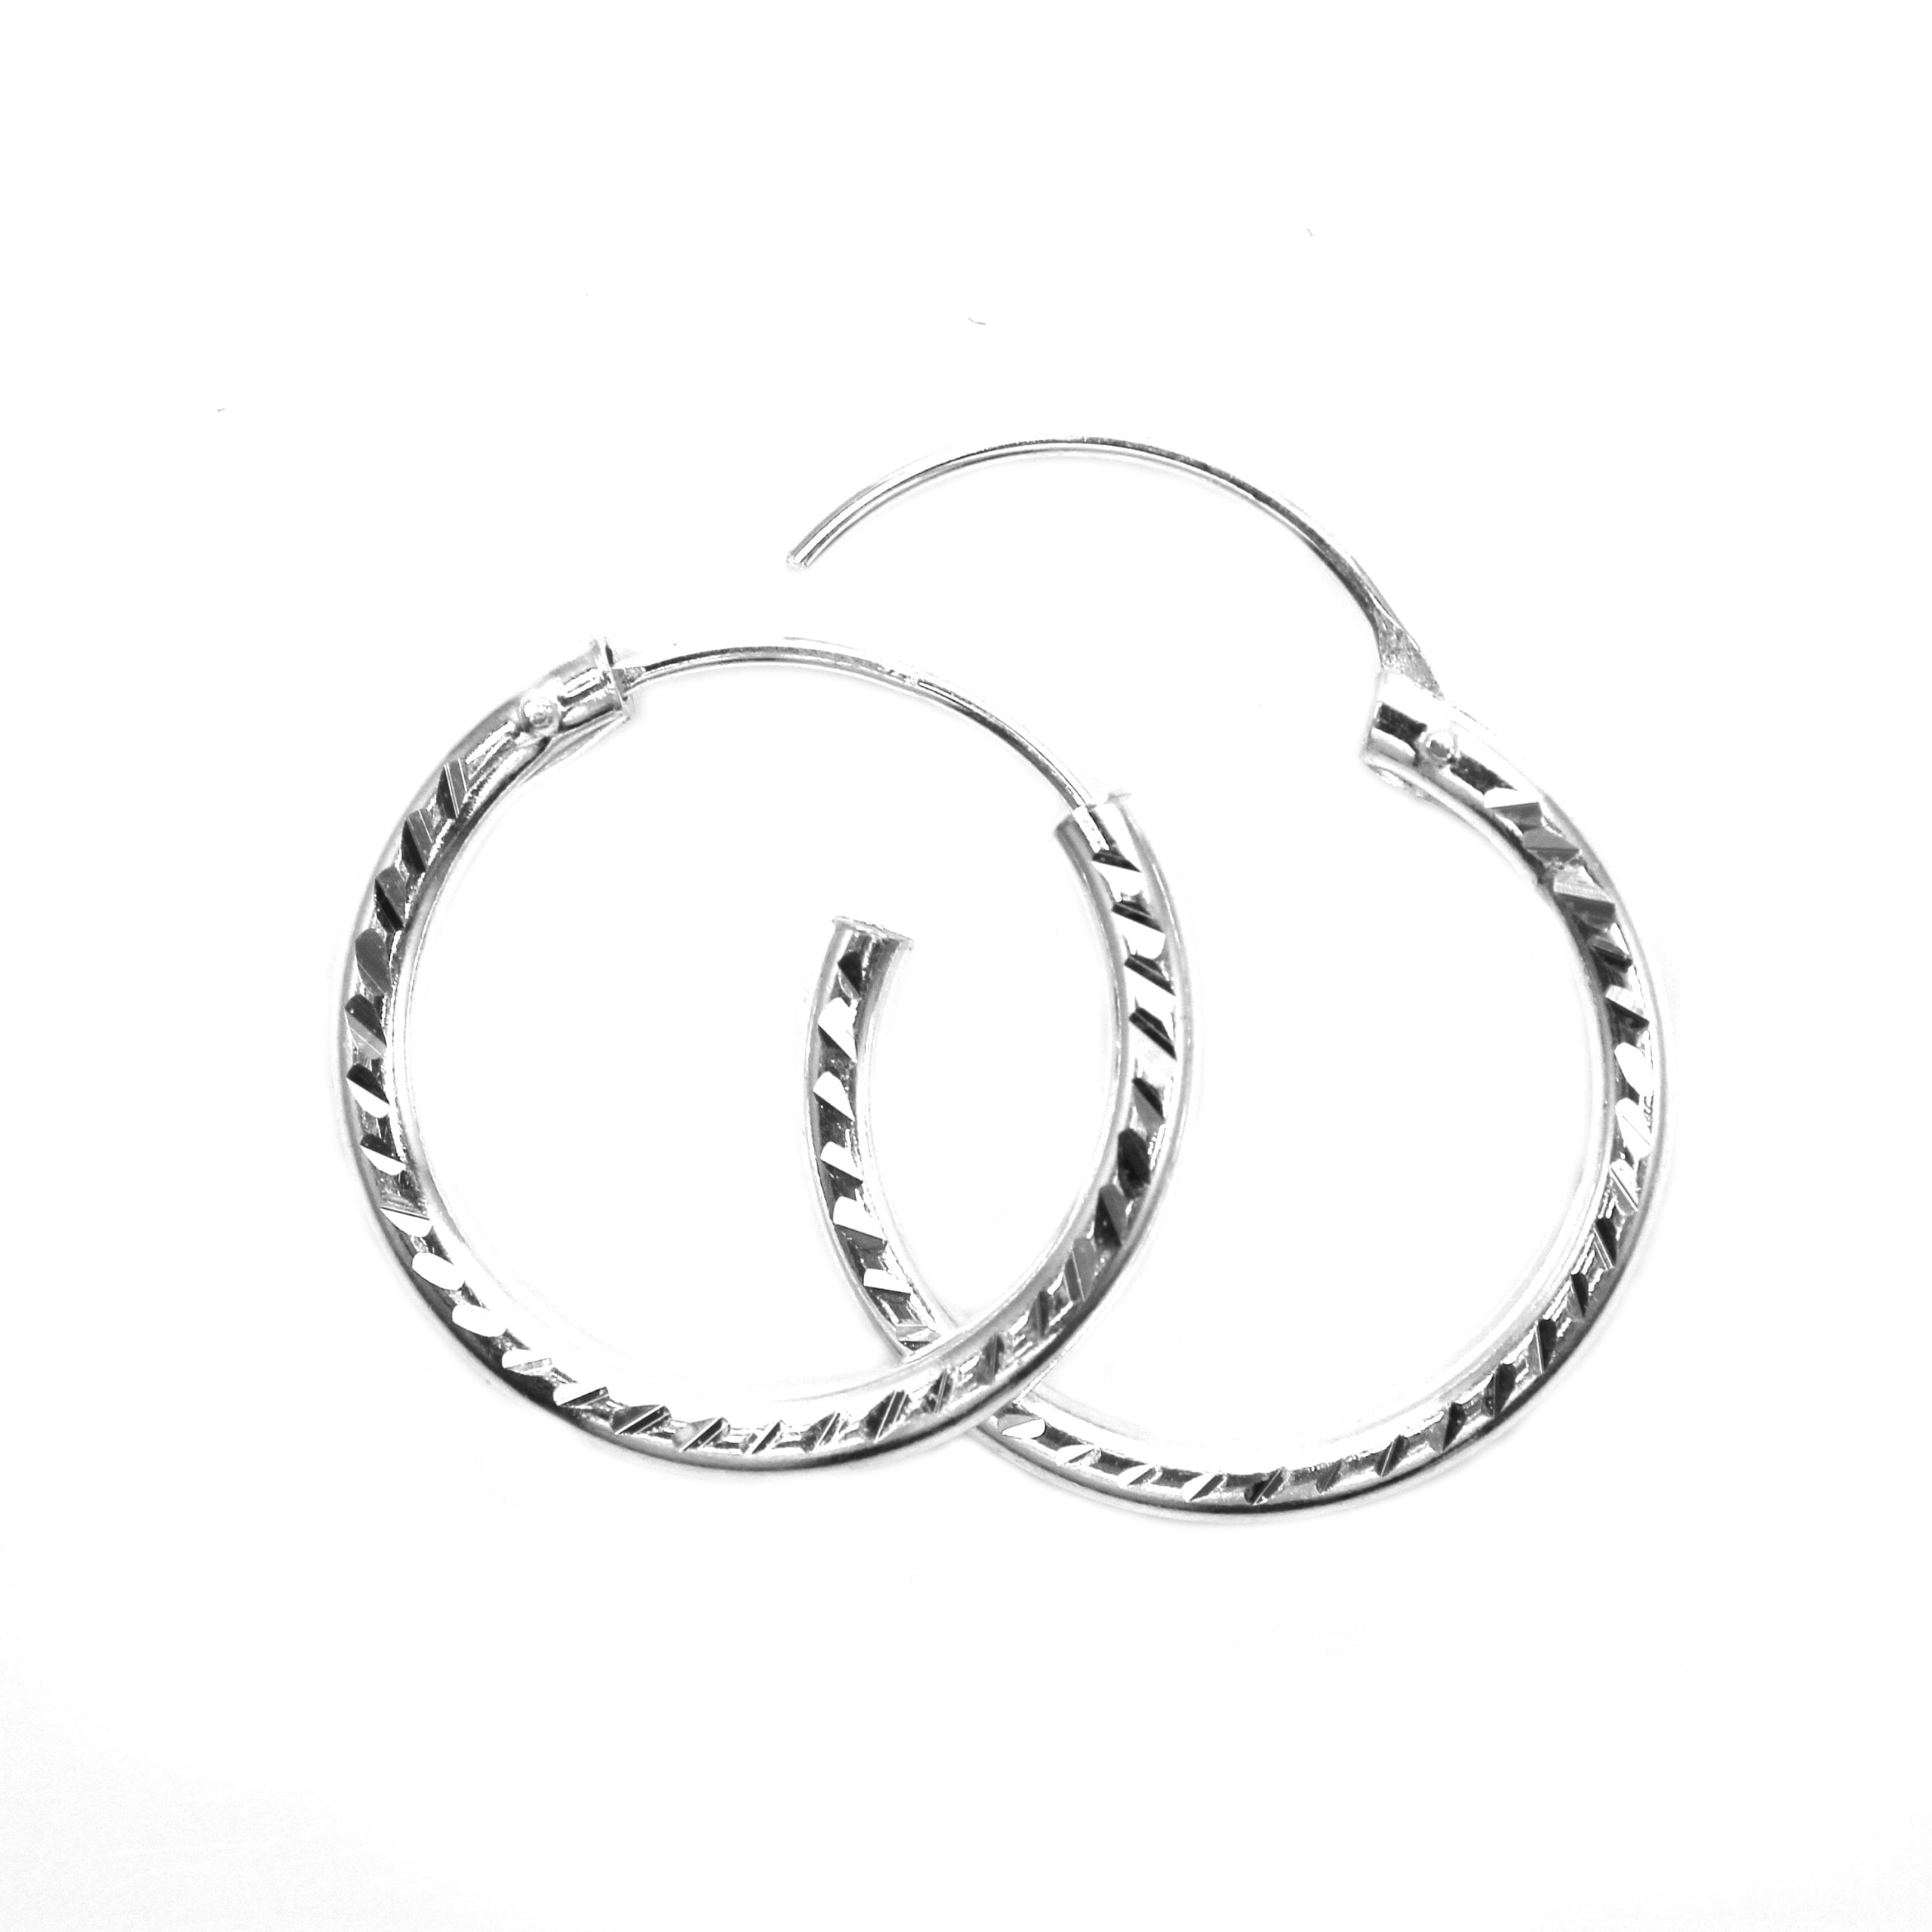 18mm diamond cut silver hoop earrings heavy weight